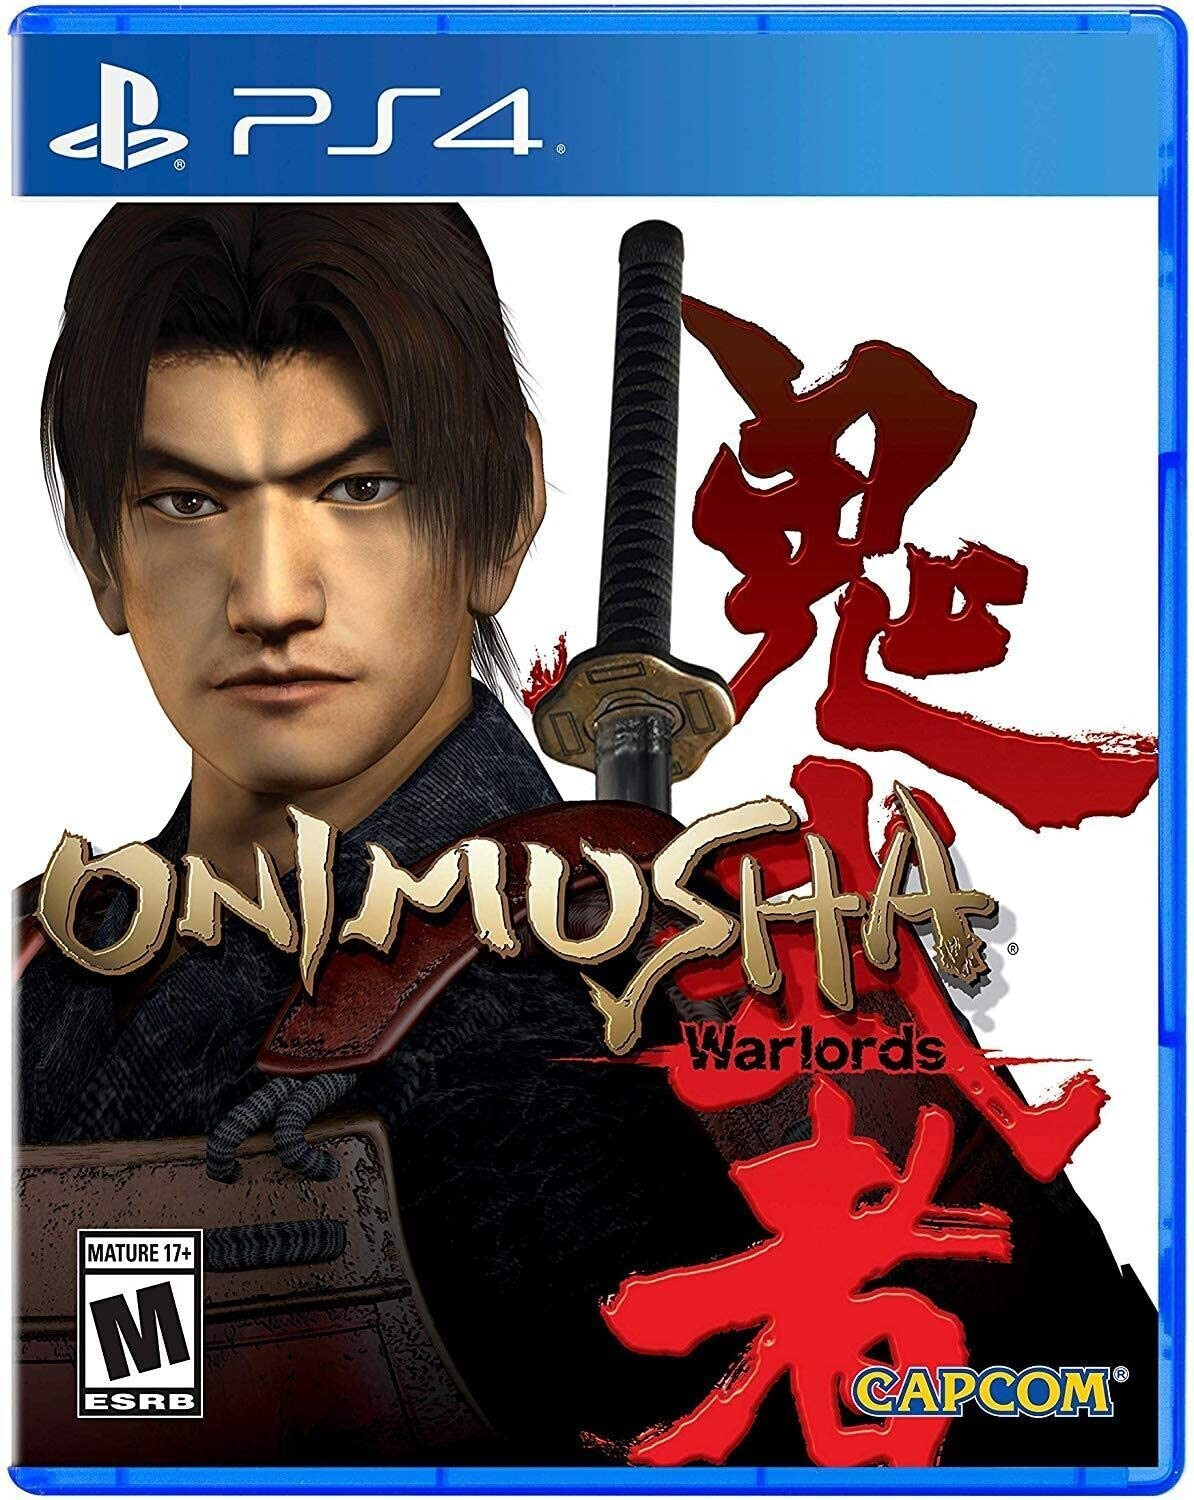 Onimusha: Warlords (PS4)